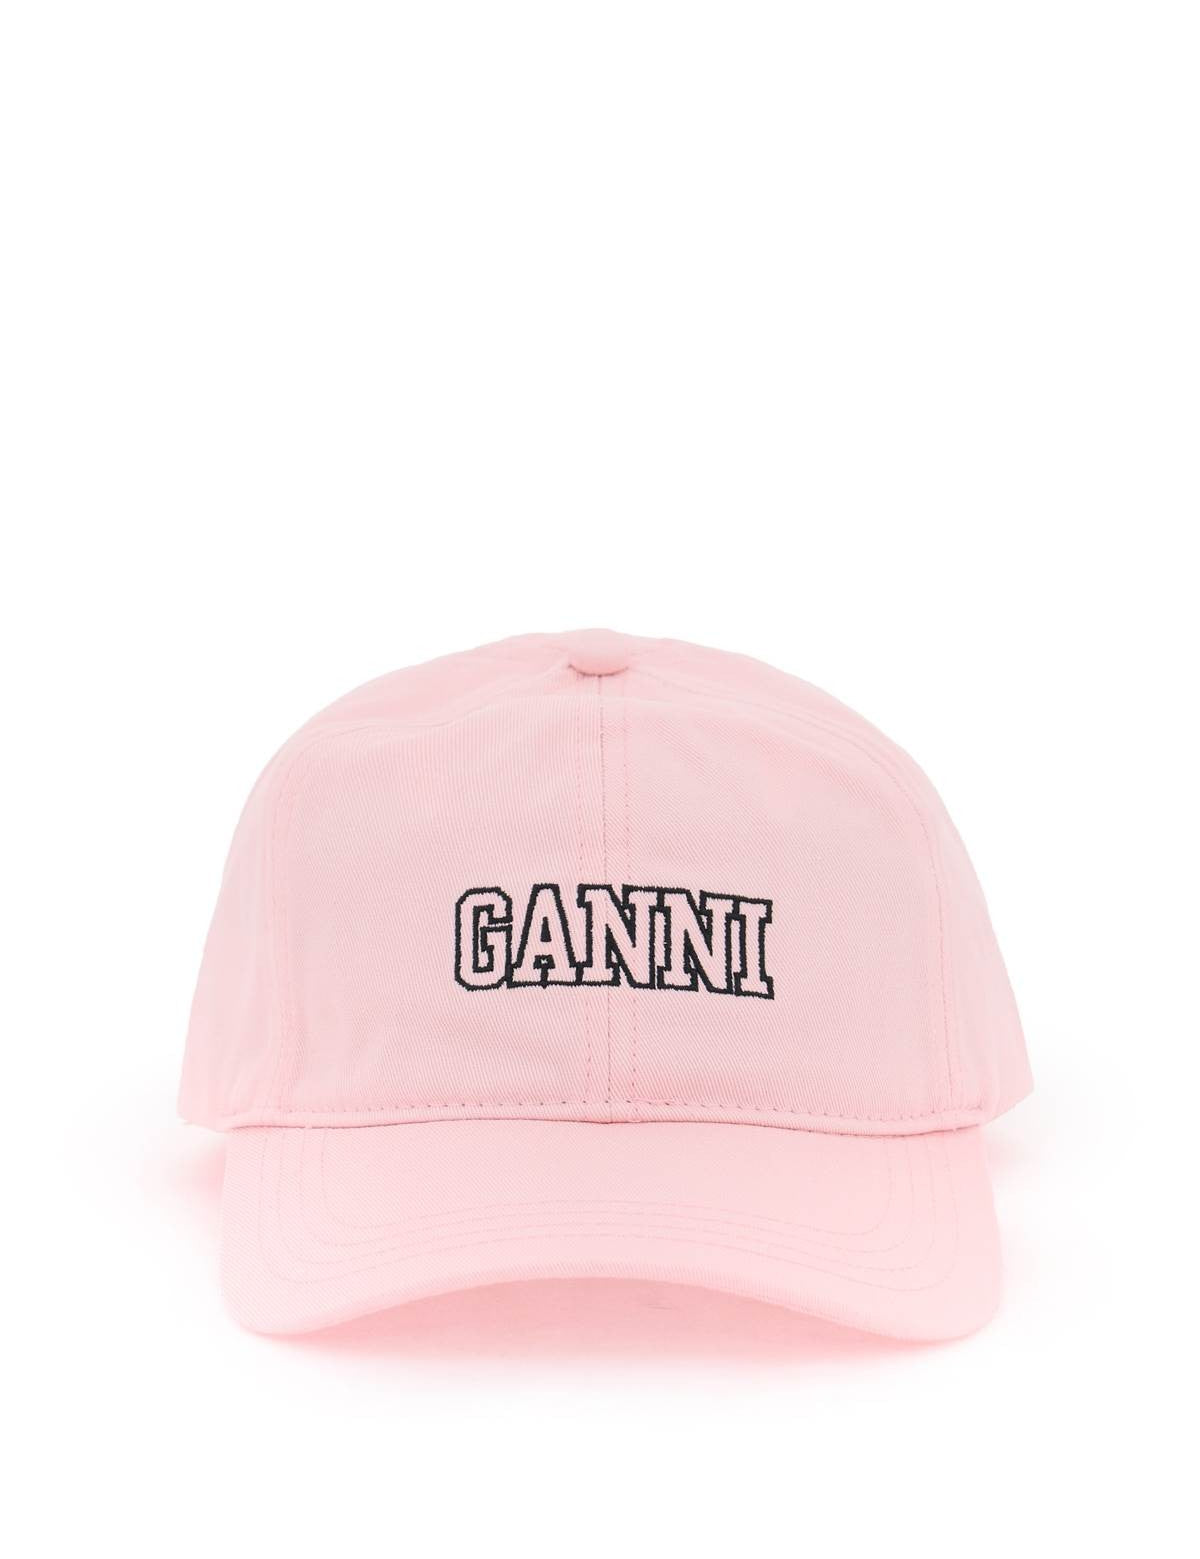 ganni-baseball-cap-with-logo-embroidery_5d7ce113-bca6-49e7-945a-d9ccb9b8be00.jpg